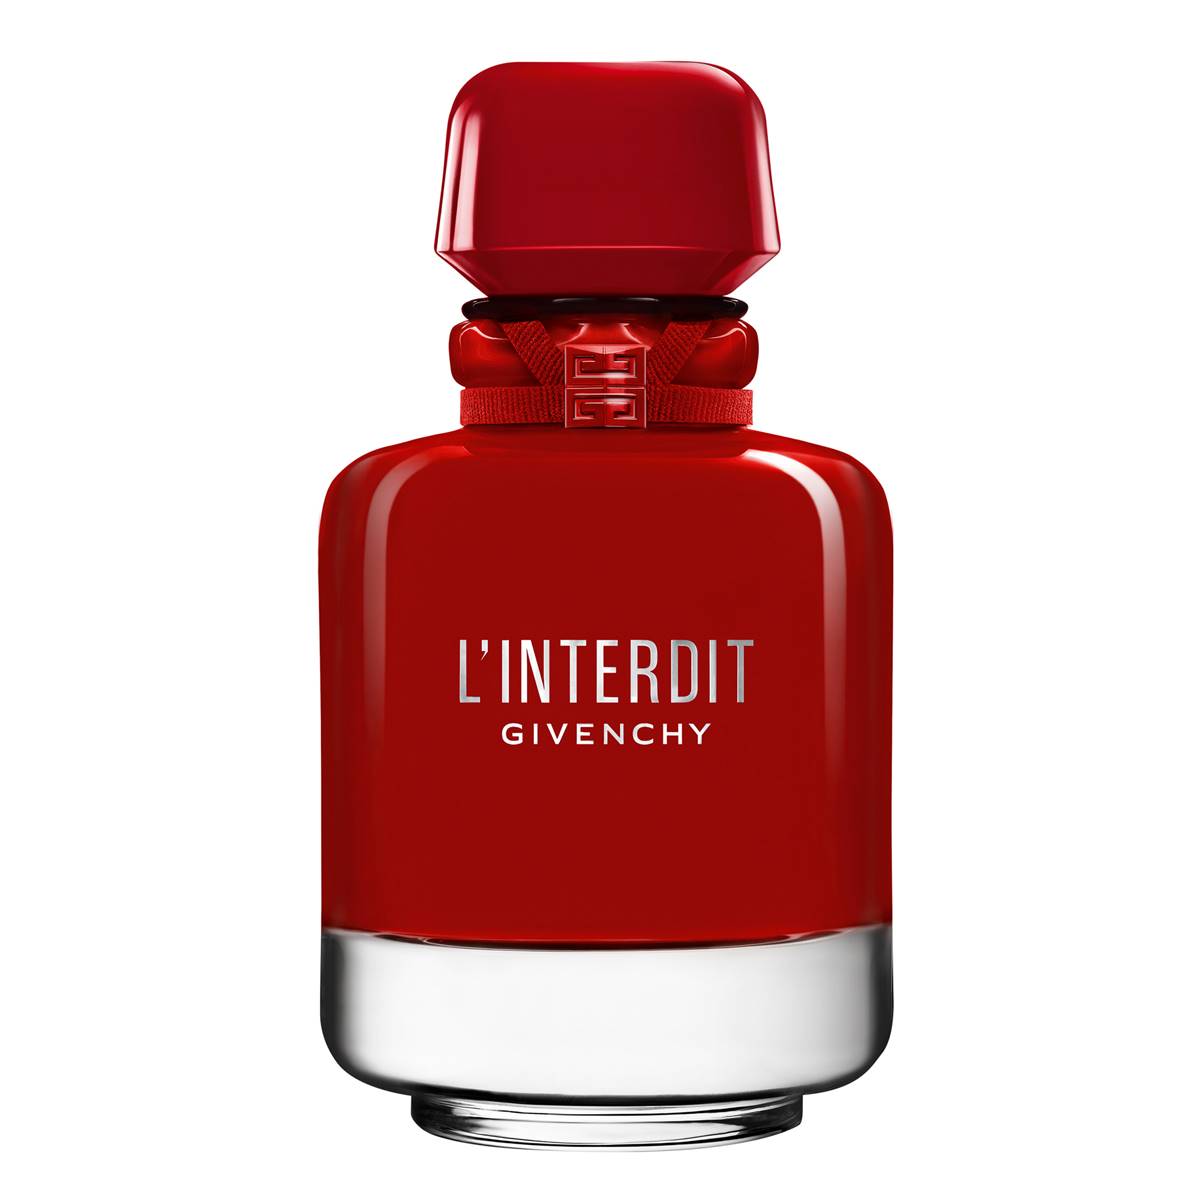 Givenchy L'Interdit Eau De Parfum Rouge Ultime - 2.7oz.